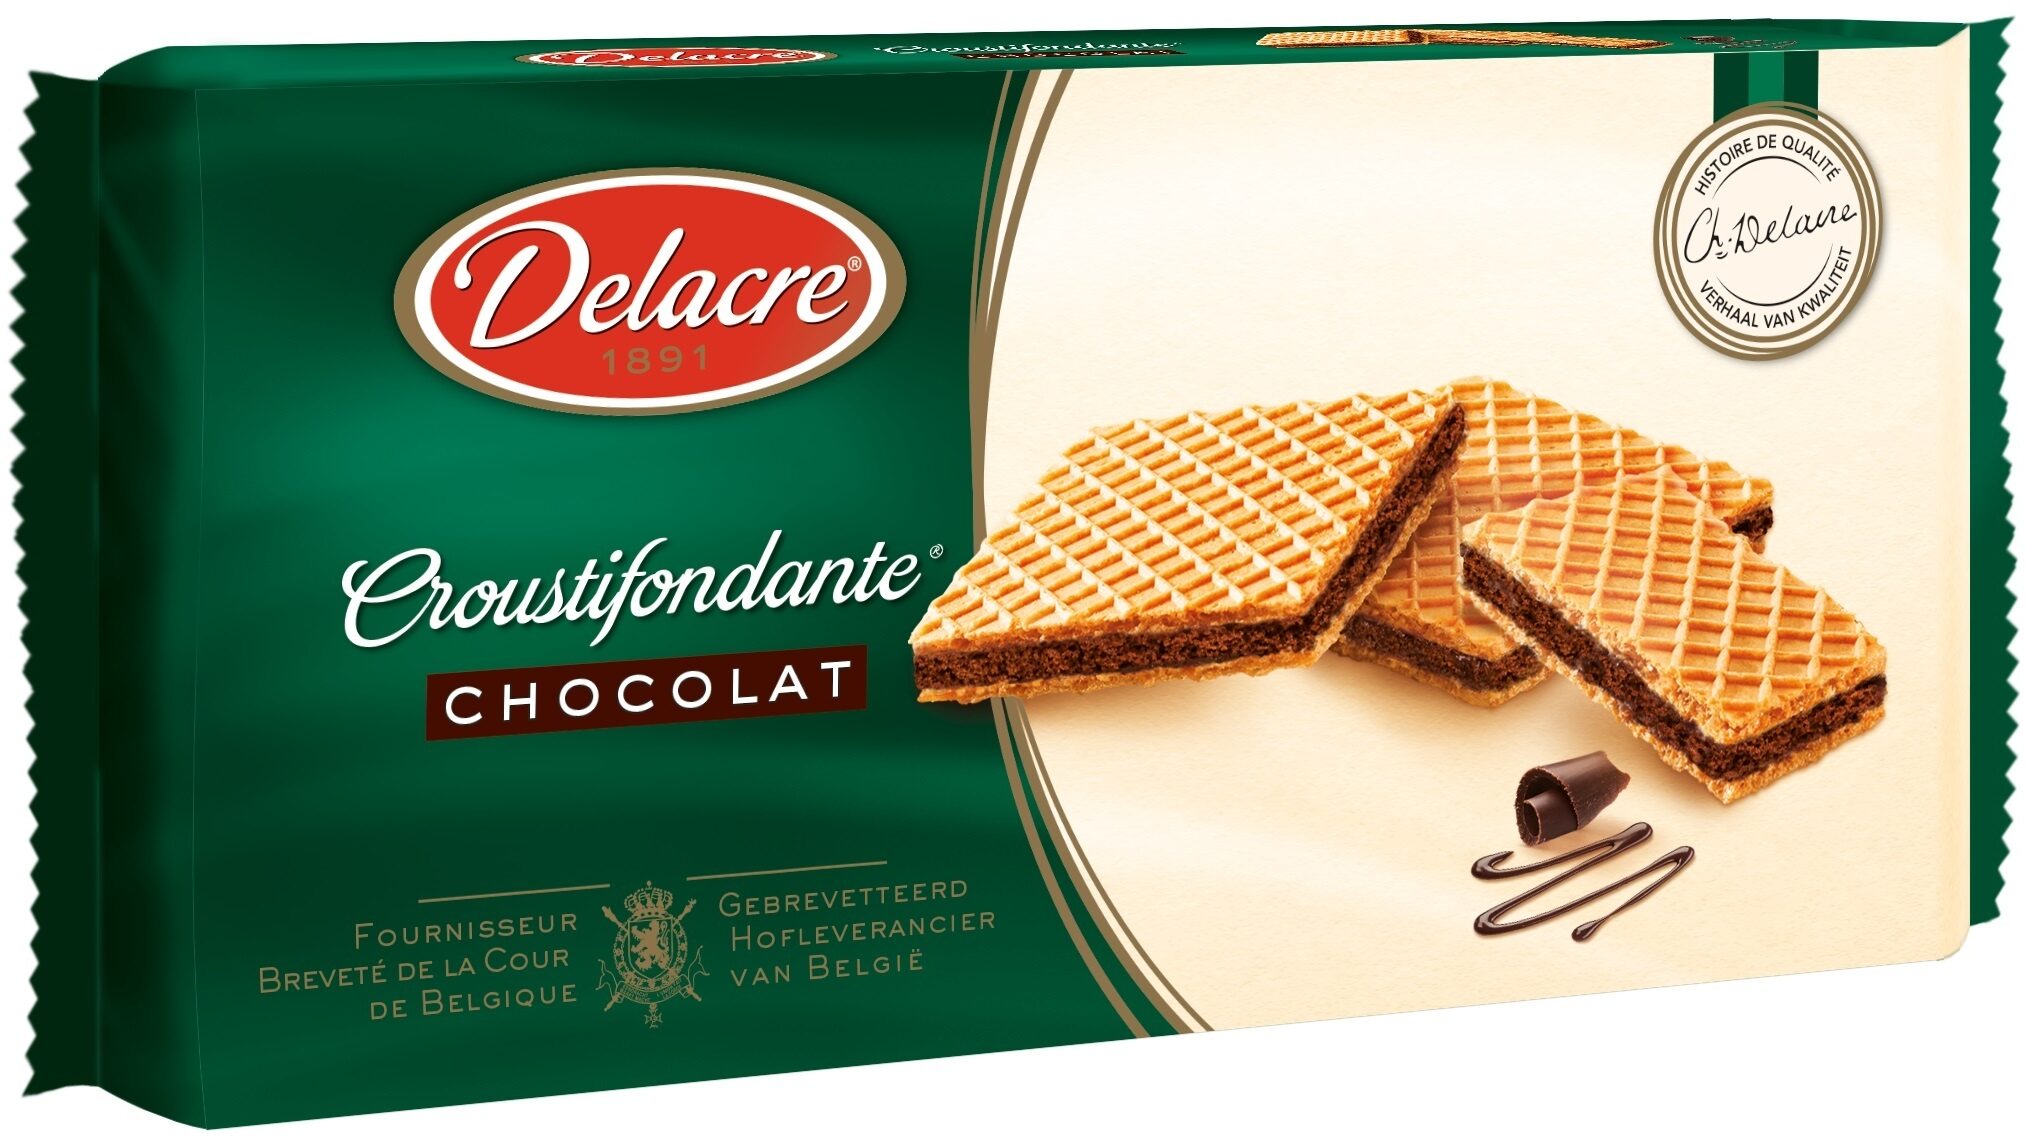 Delacre Croutifondante gaufrette chocolat - Produit - fr